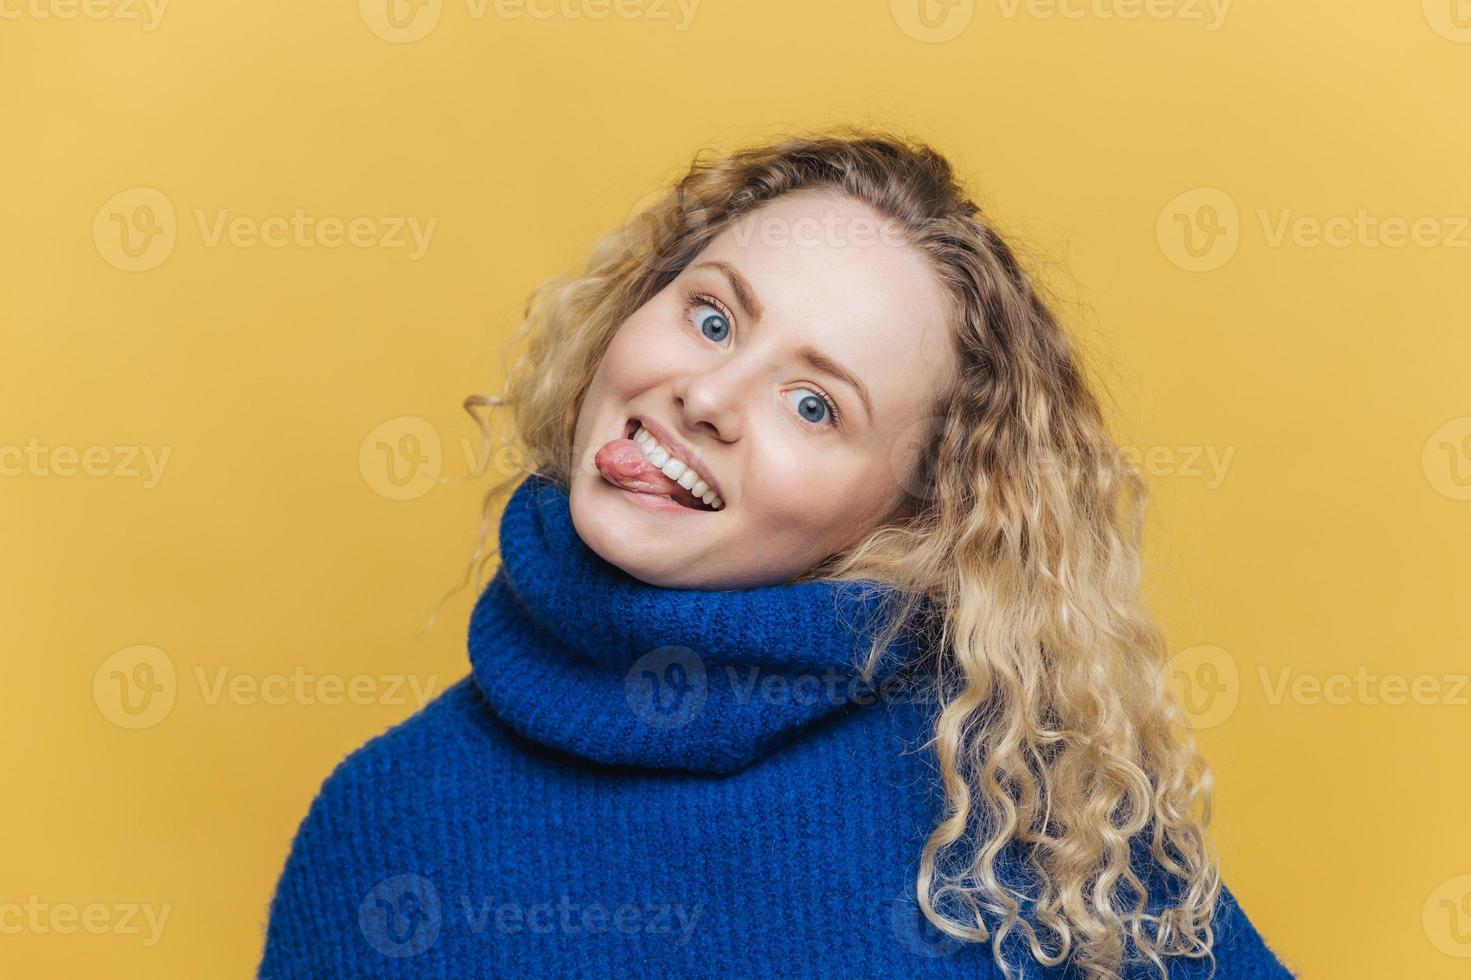 grappige komische krullende jonge vrouw met positieve uitdrukking, toont tong, heeft plezier met vrienden, draagt blauwe trui, maakt grimas, geïsoleerd over gele studio achtergrond. mensen en leuk concept. foto